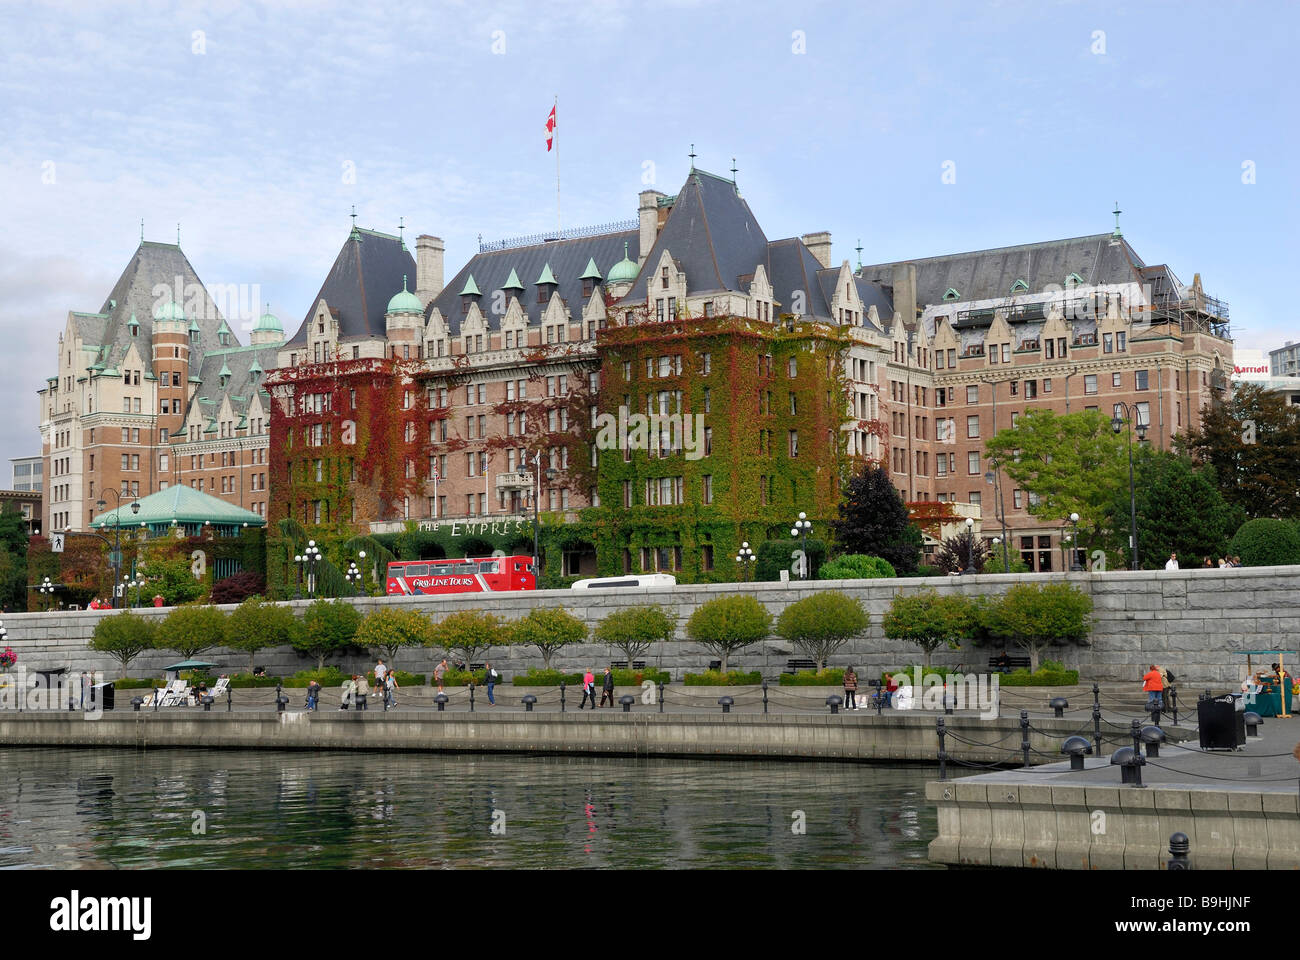 Empress Hotel, hotel, Victoria fer historique, l'île de Vancouver, Colombie-Britannique, Canada, Amérique du Nord Banque D'Images